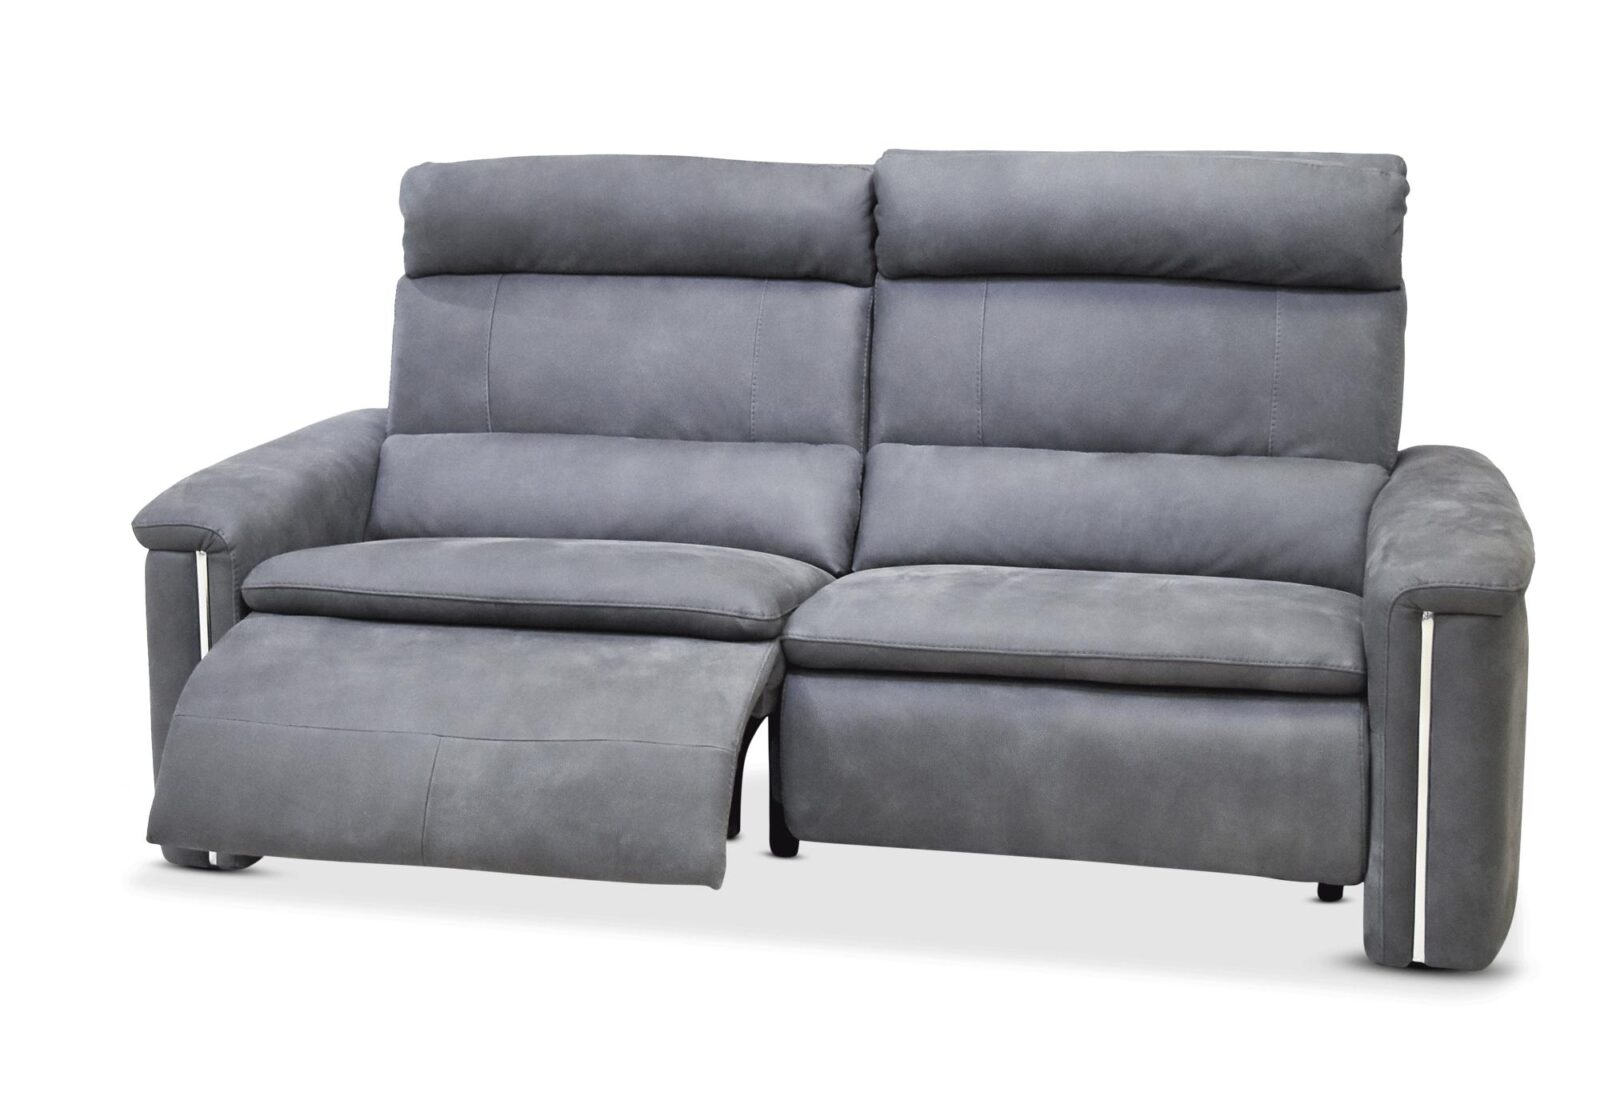 3er Relaxsofa Classic mit Armlehnenabsetzung. Bezug: Leder. Farbe: Grau. Erhältlich bei Möbel Gallati.